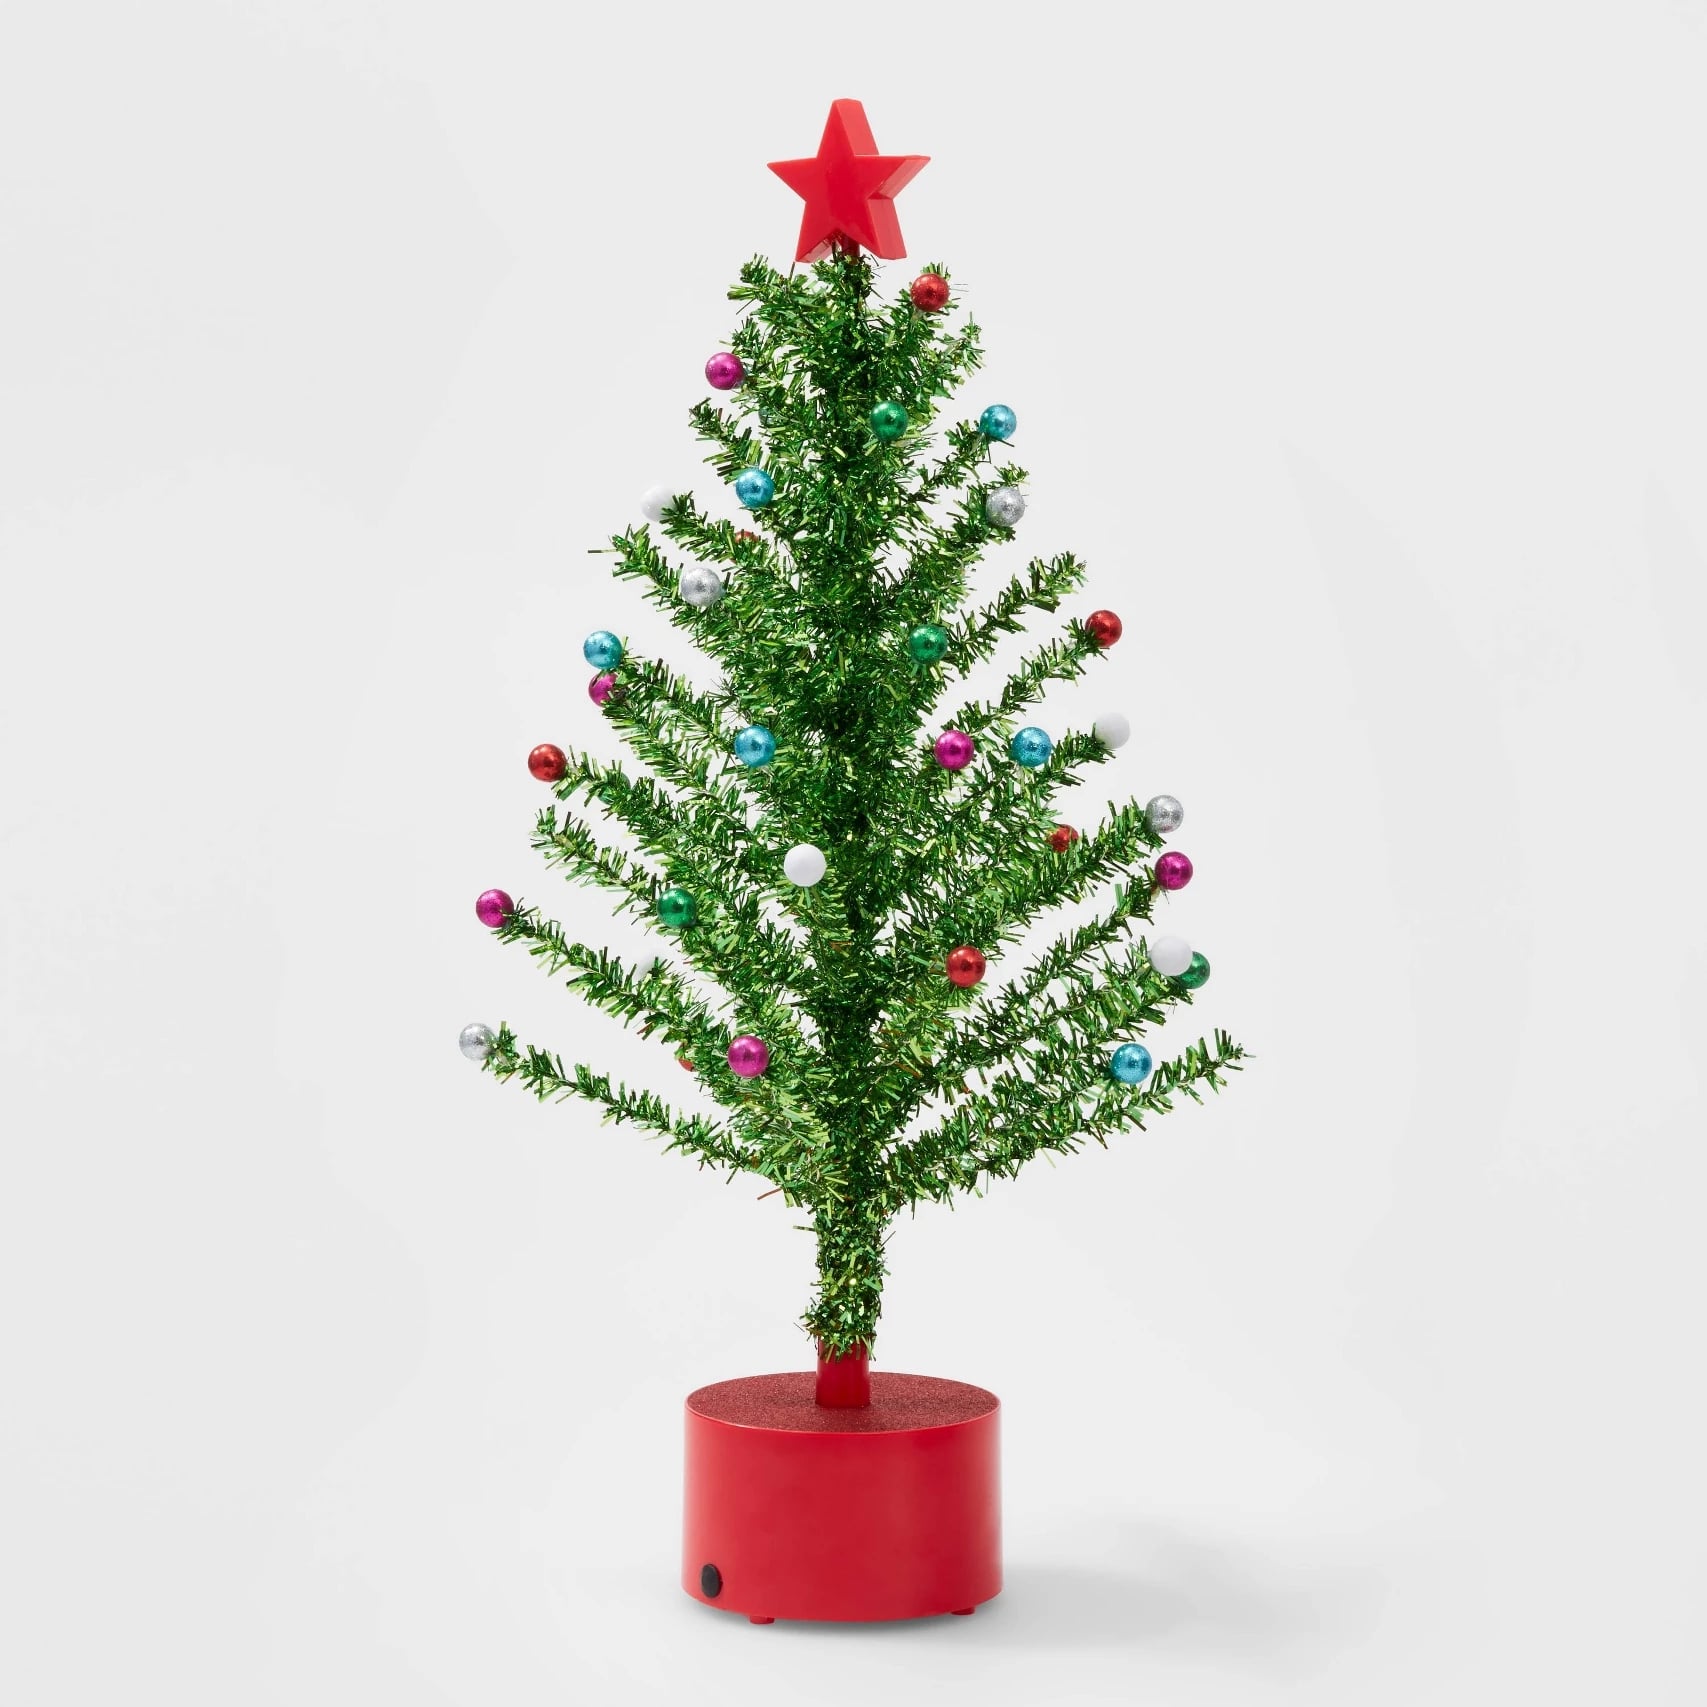 Target Wondershop Retro Style GREEN Glitter Deer 2 Pack Christmas Ornaments 2019 